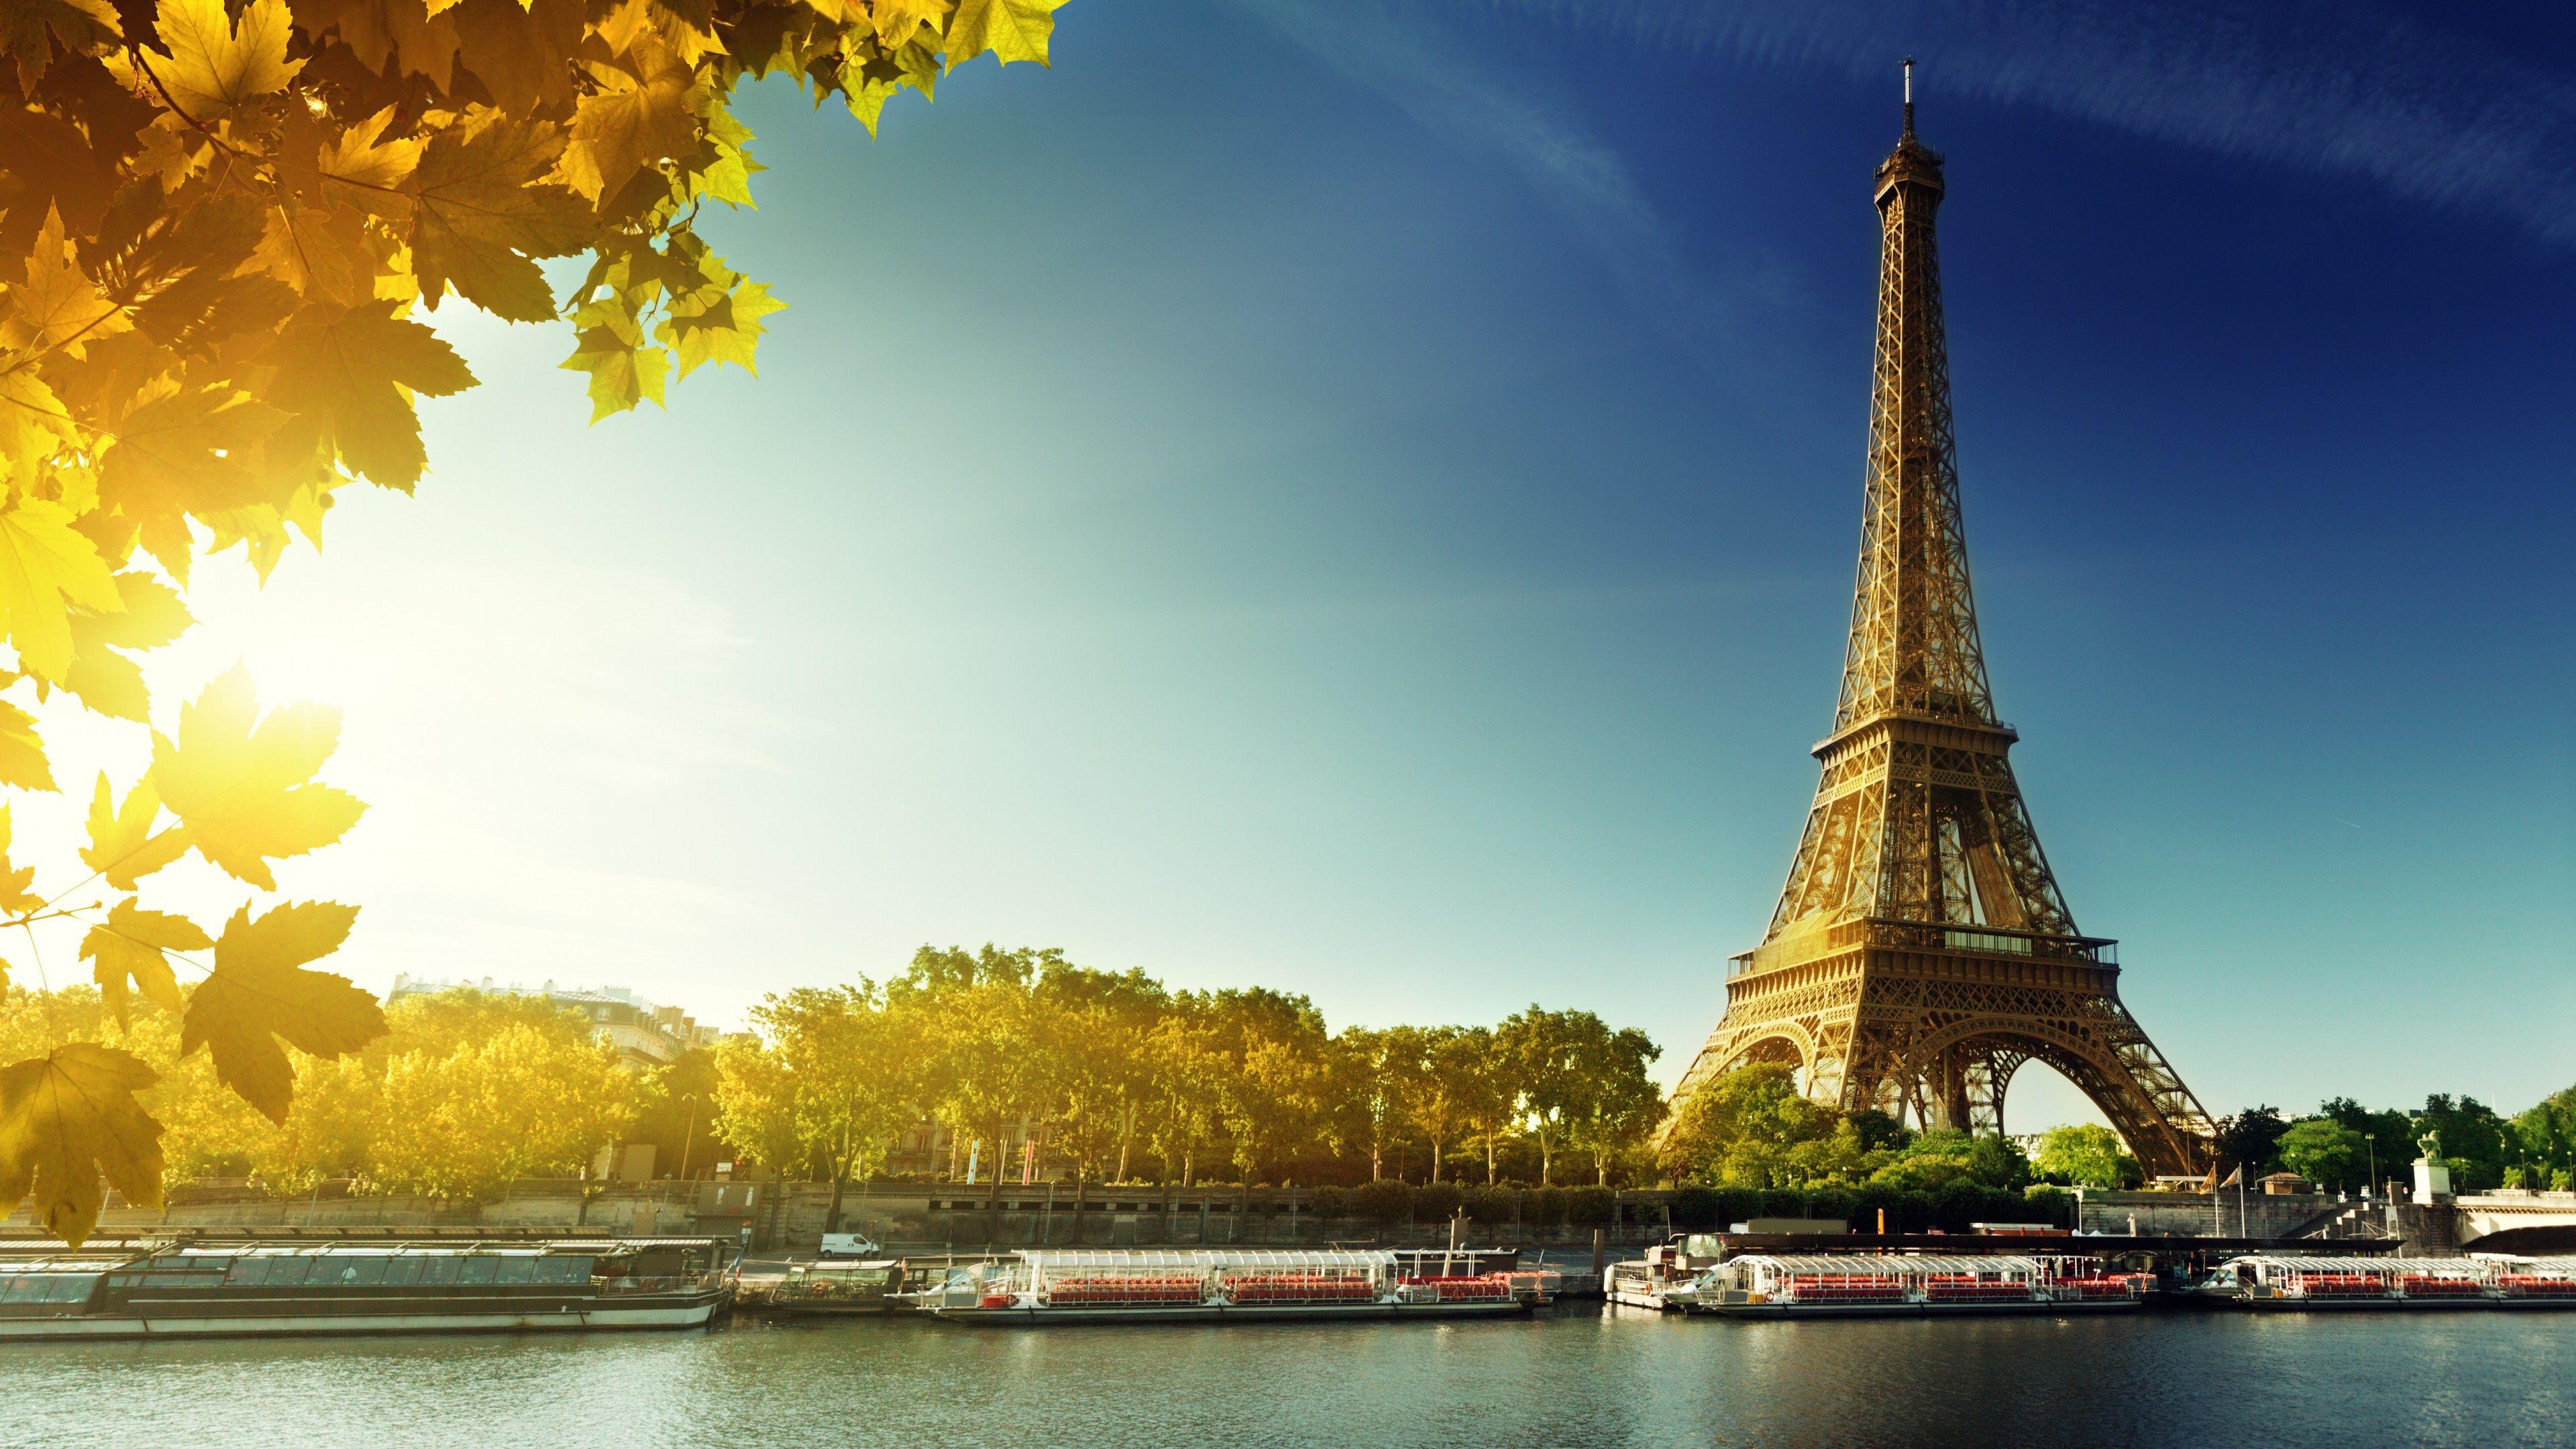 Wallpaper Paris, Eiffel Tower, France, autumn, travel, tourism, Architecture